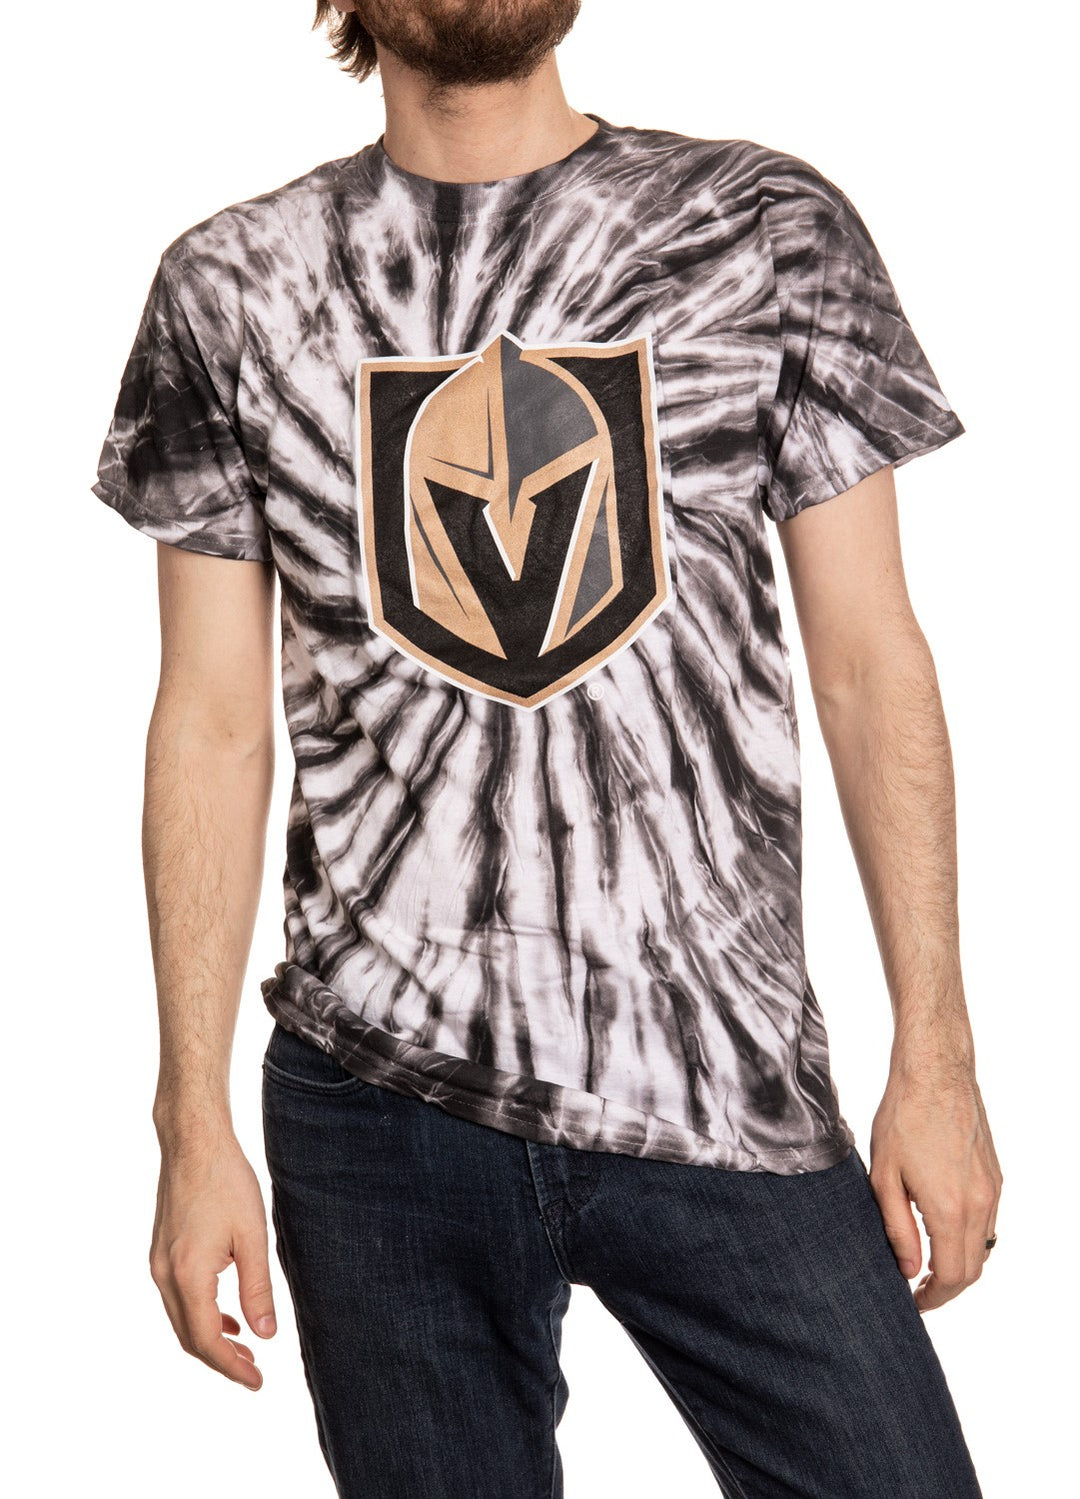 Vegas Golden Knights Black Spiral Tie Dye Front View